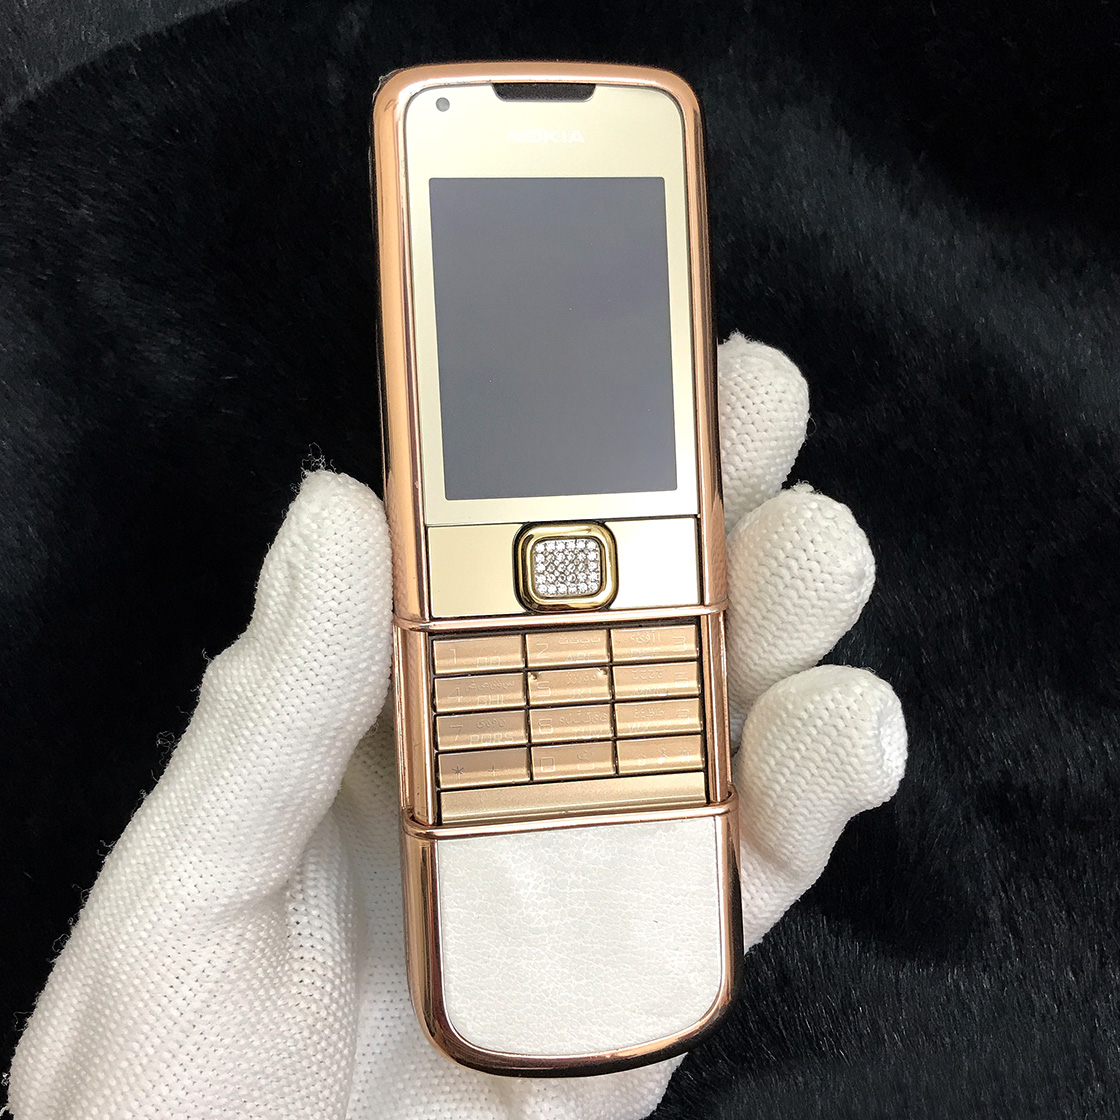 Nokia 8800 Gold Arte Mạ Vàng Hồng Vỏ Cao Cấp